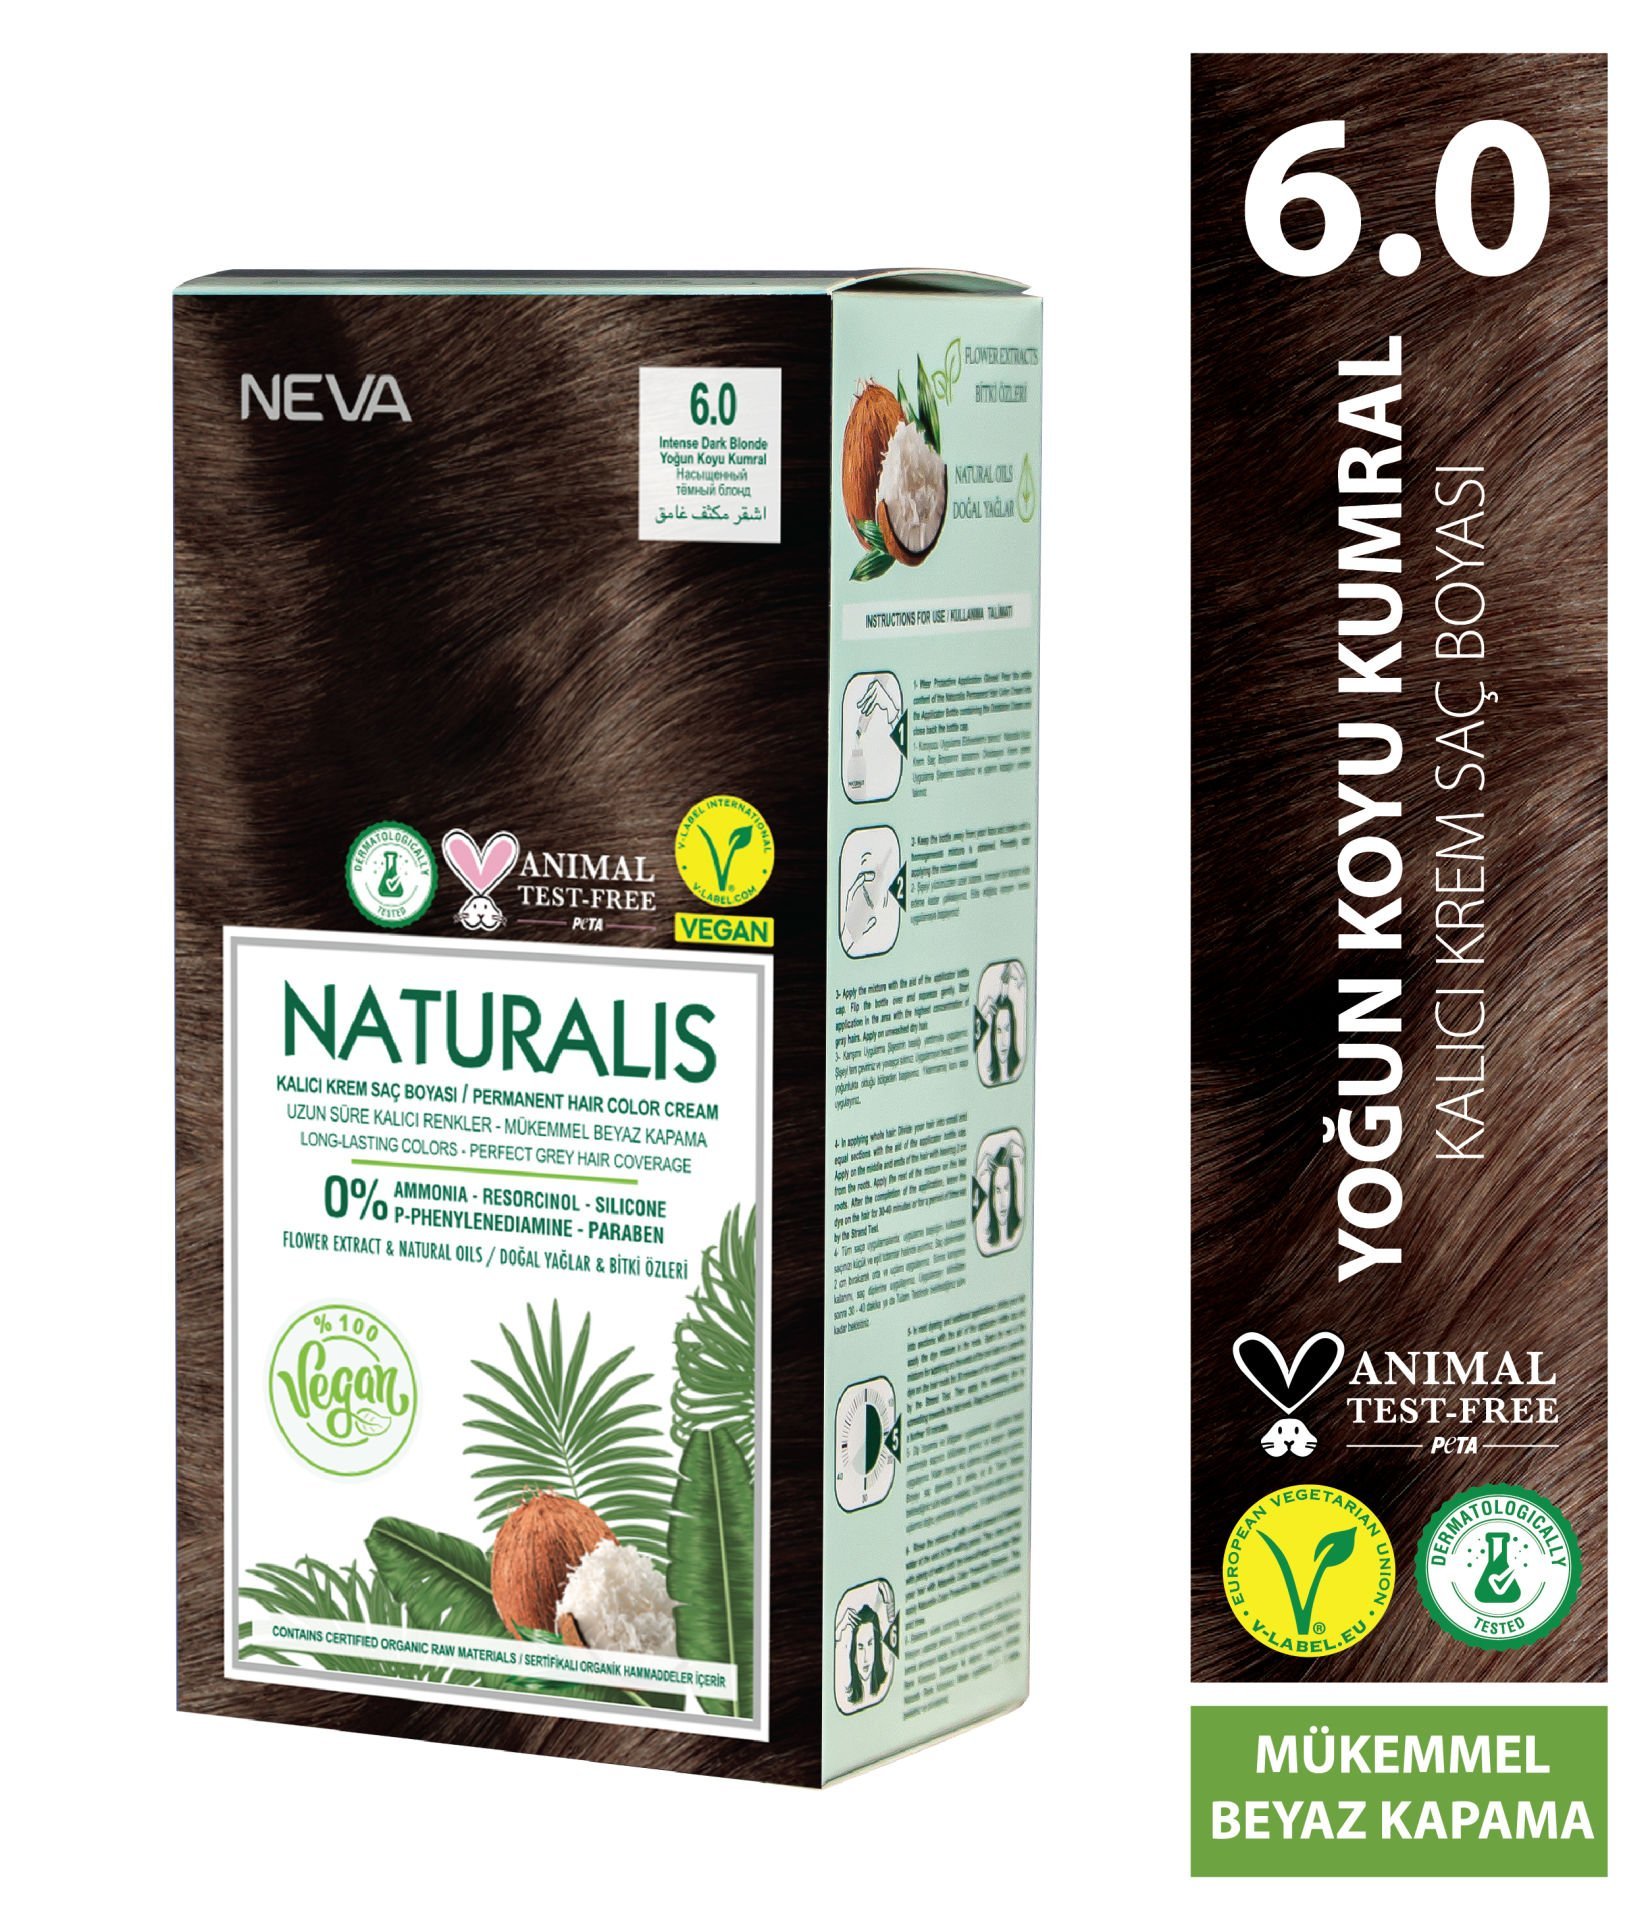 Nevacolor Naturalis Vegan Yoğun Koyu Kumral 6.0 Kalıcı Krem Saç Boyası Seti